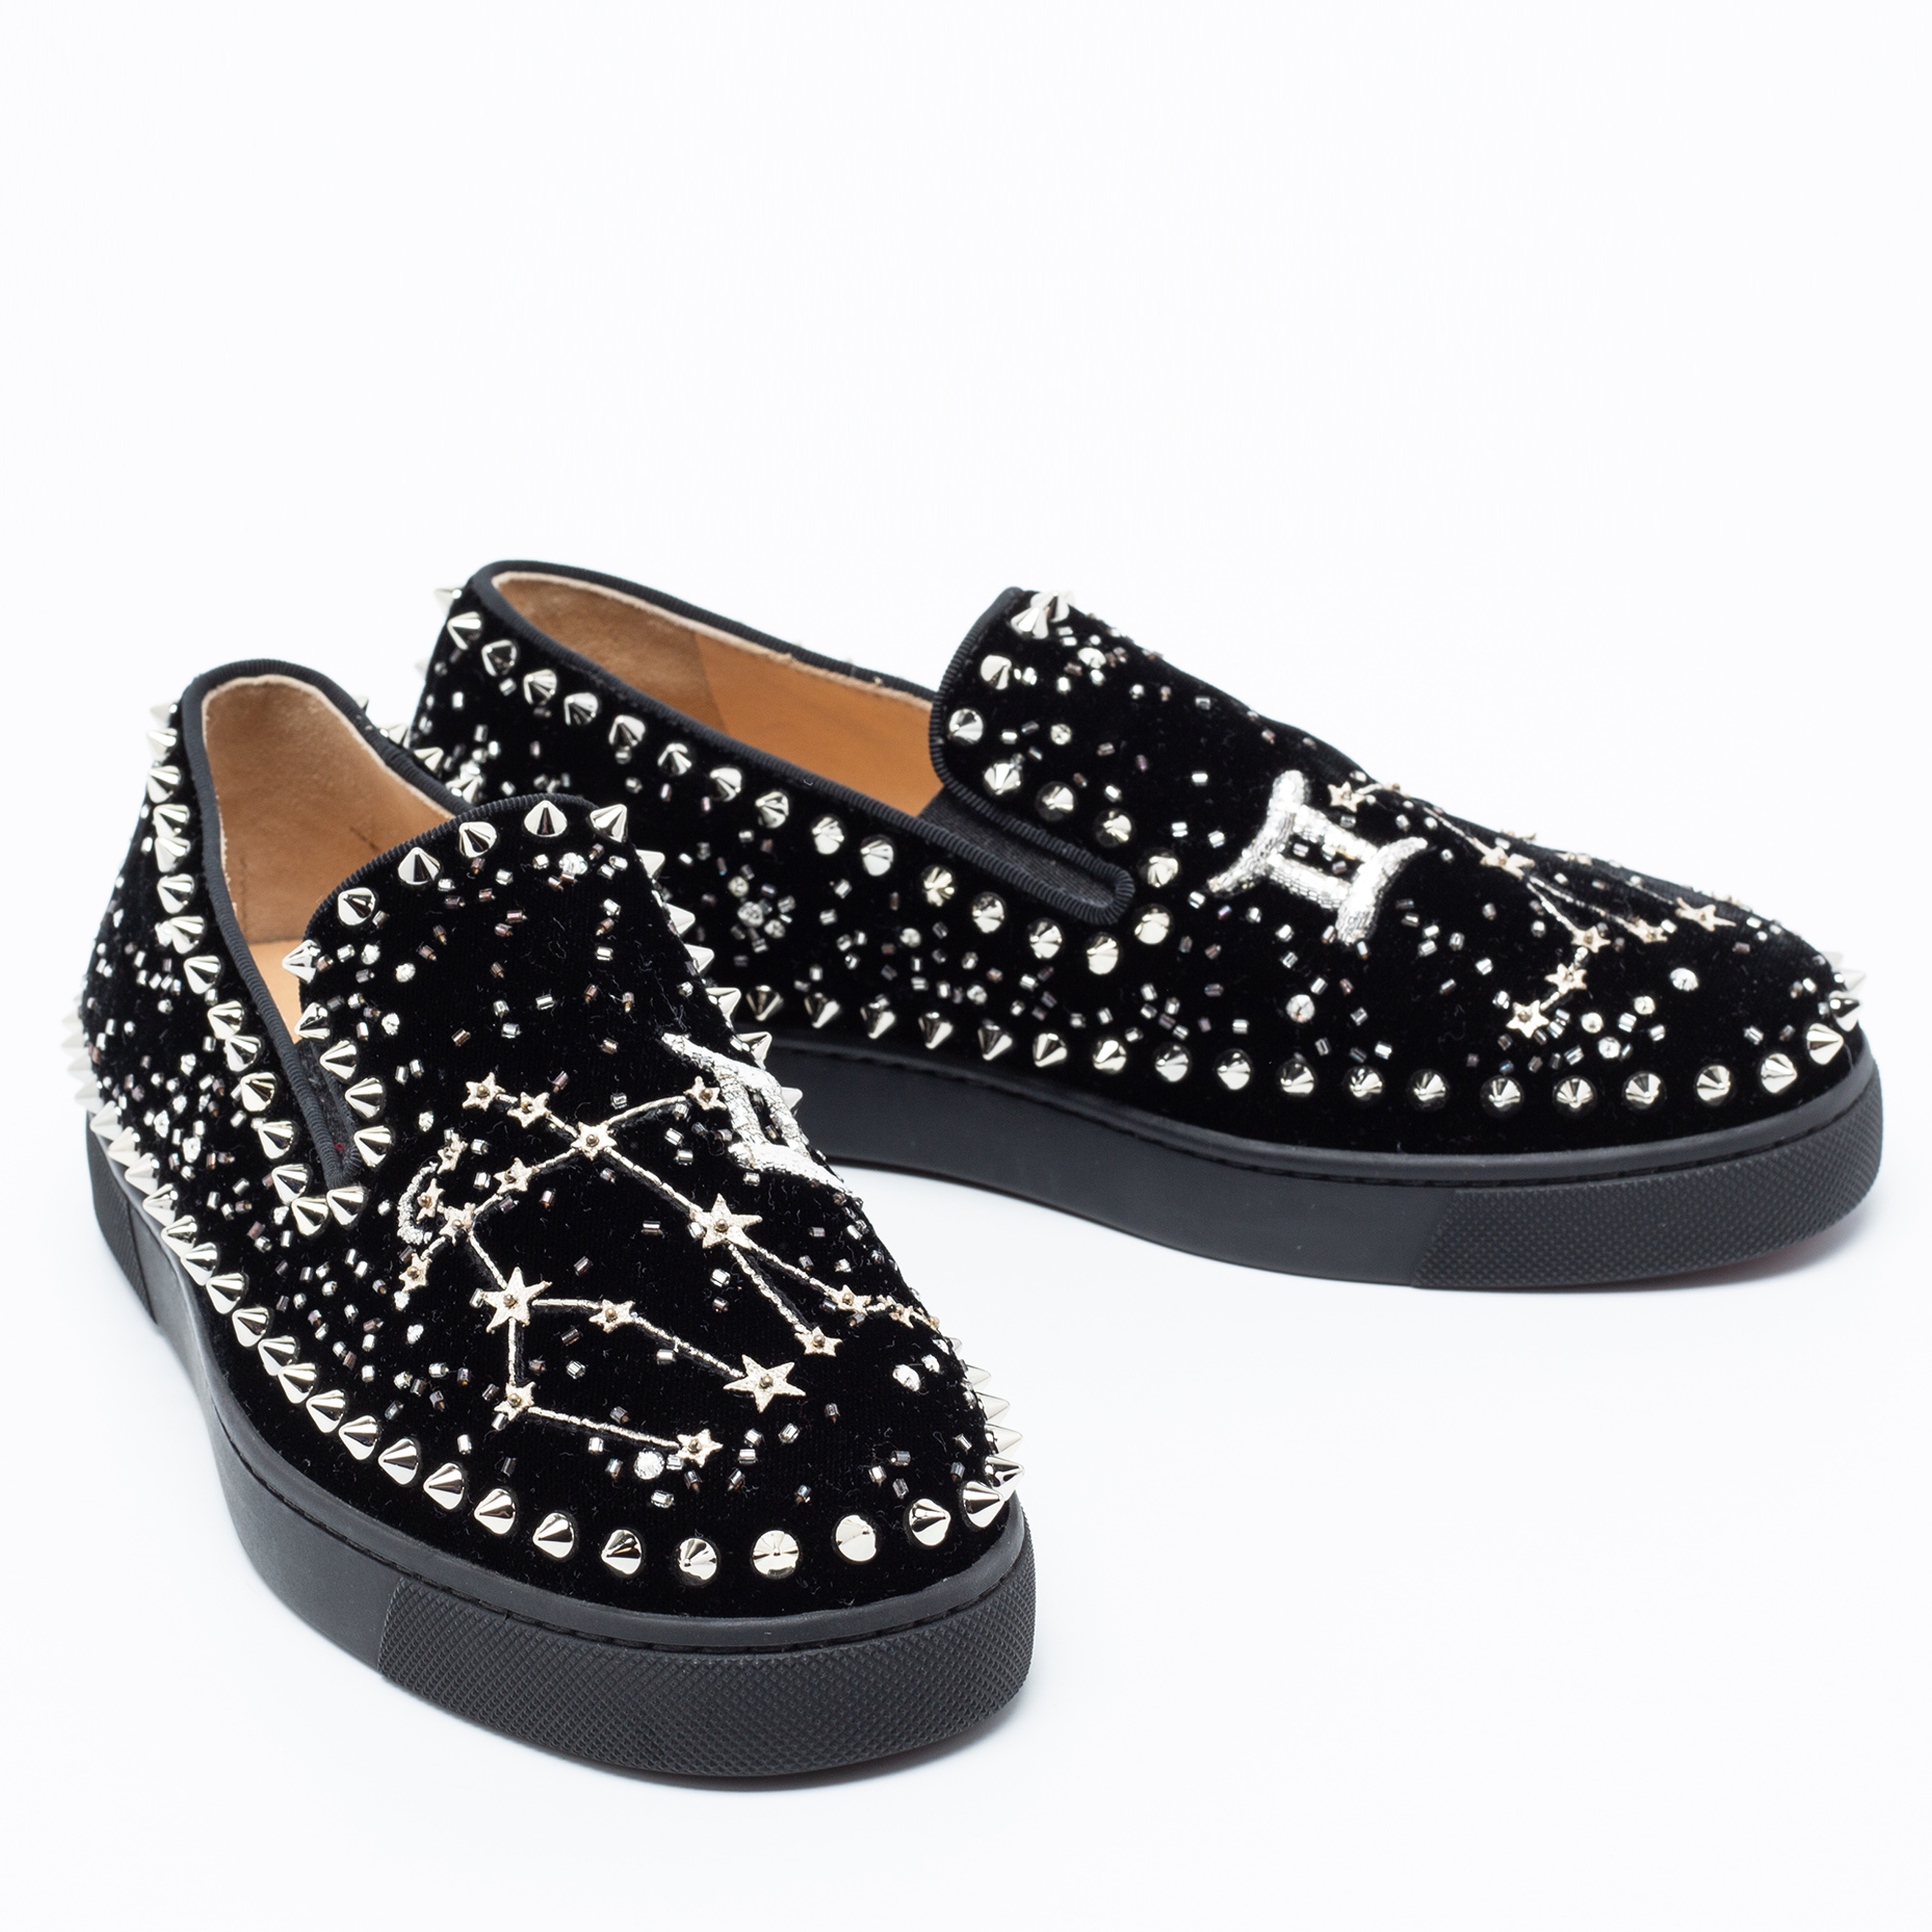 Christian Louboutin Black Velvet Spike Embellished Slip On Sneakers Size 36.5